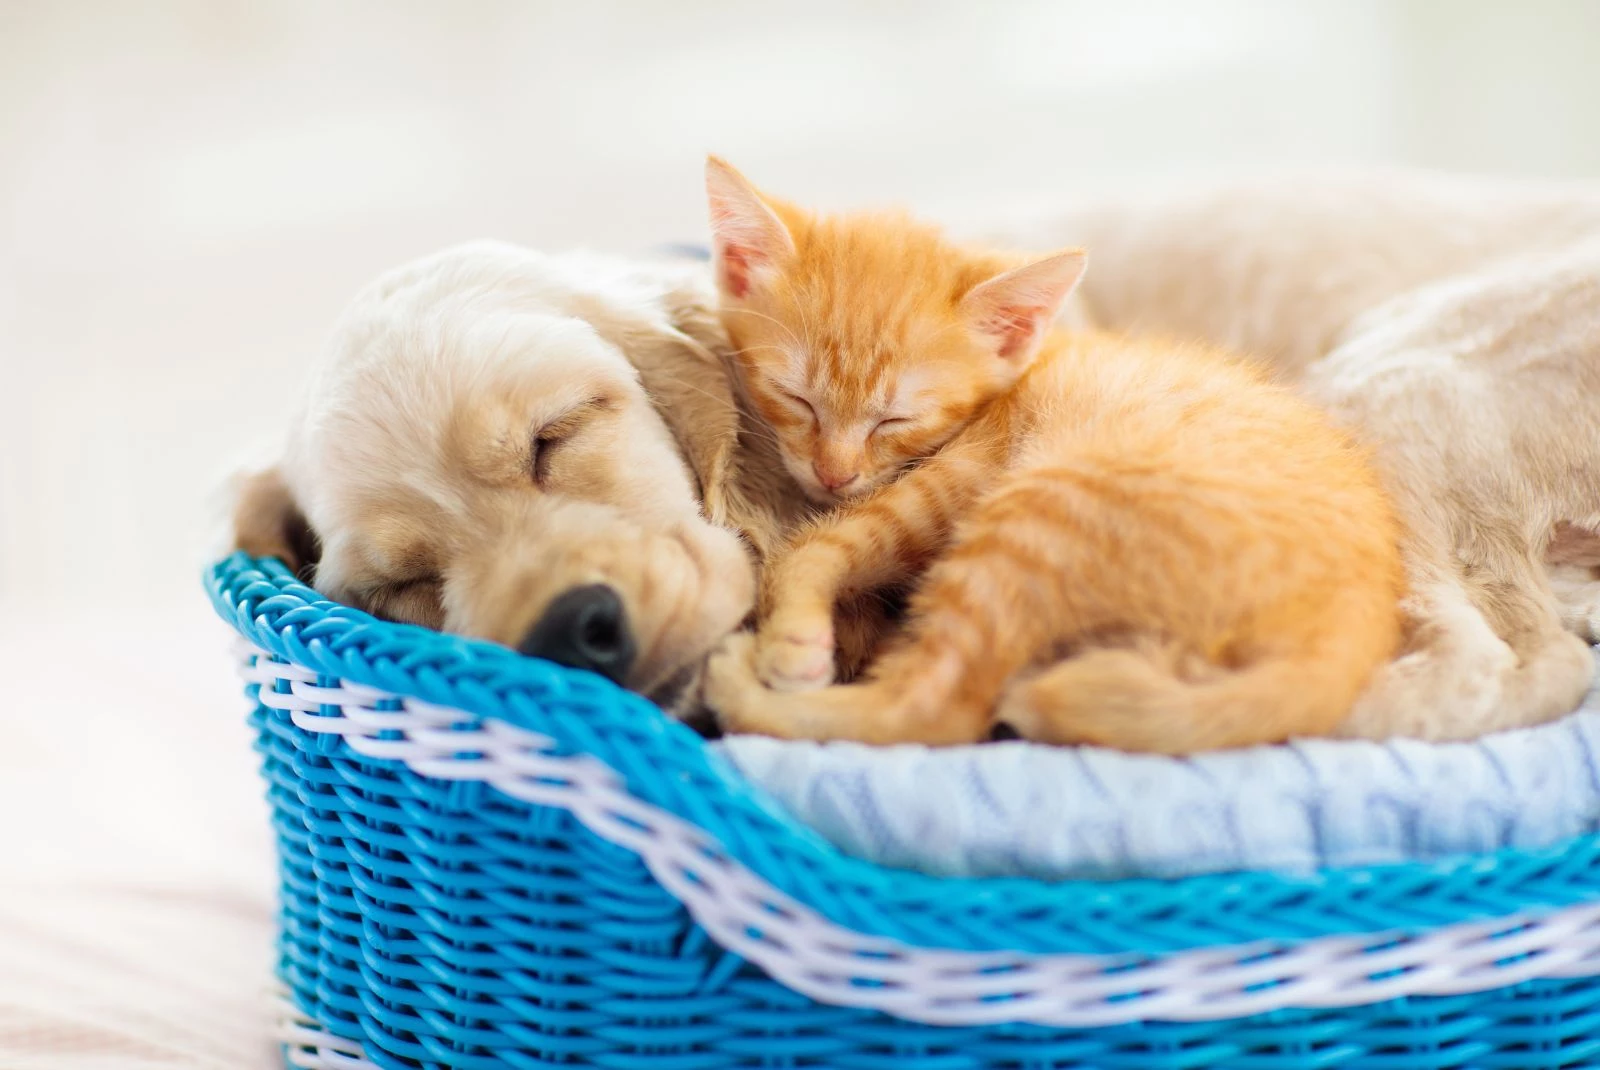 Sleeping puppy and kitten